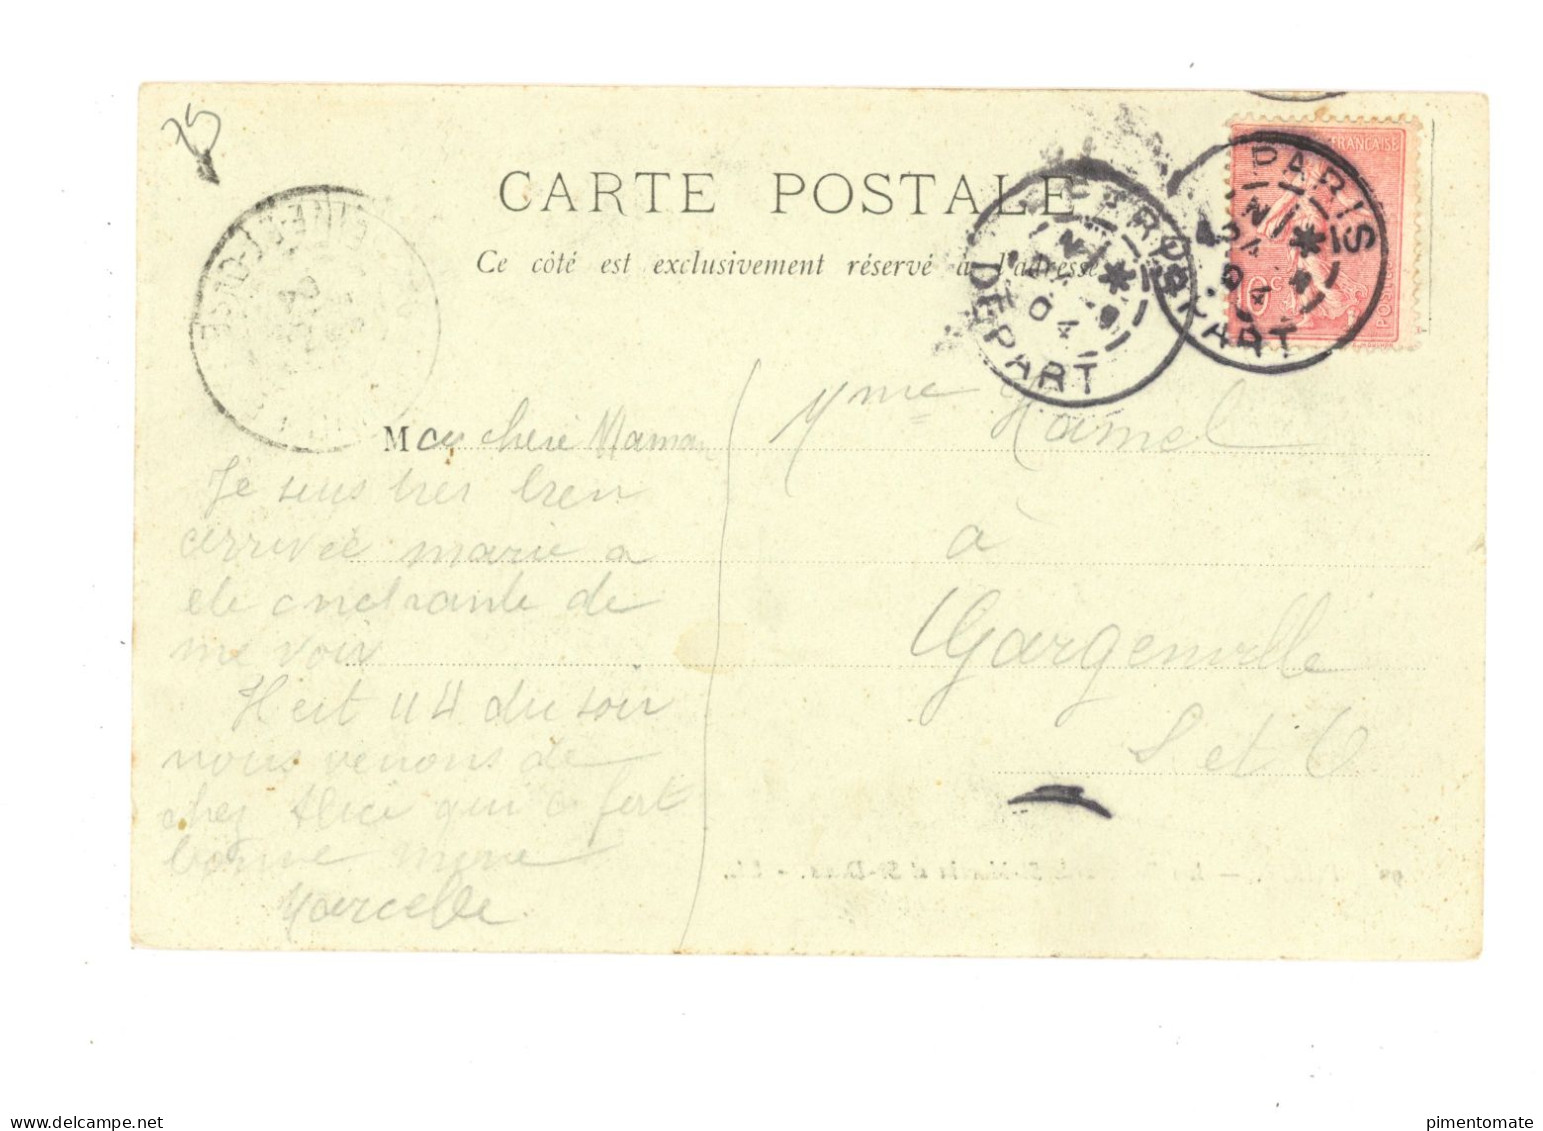 PARIS LES BOULEVARDS SAINT MARTIN ET SAINT DENIS 1904 - Unclassified